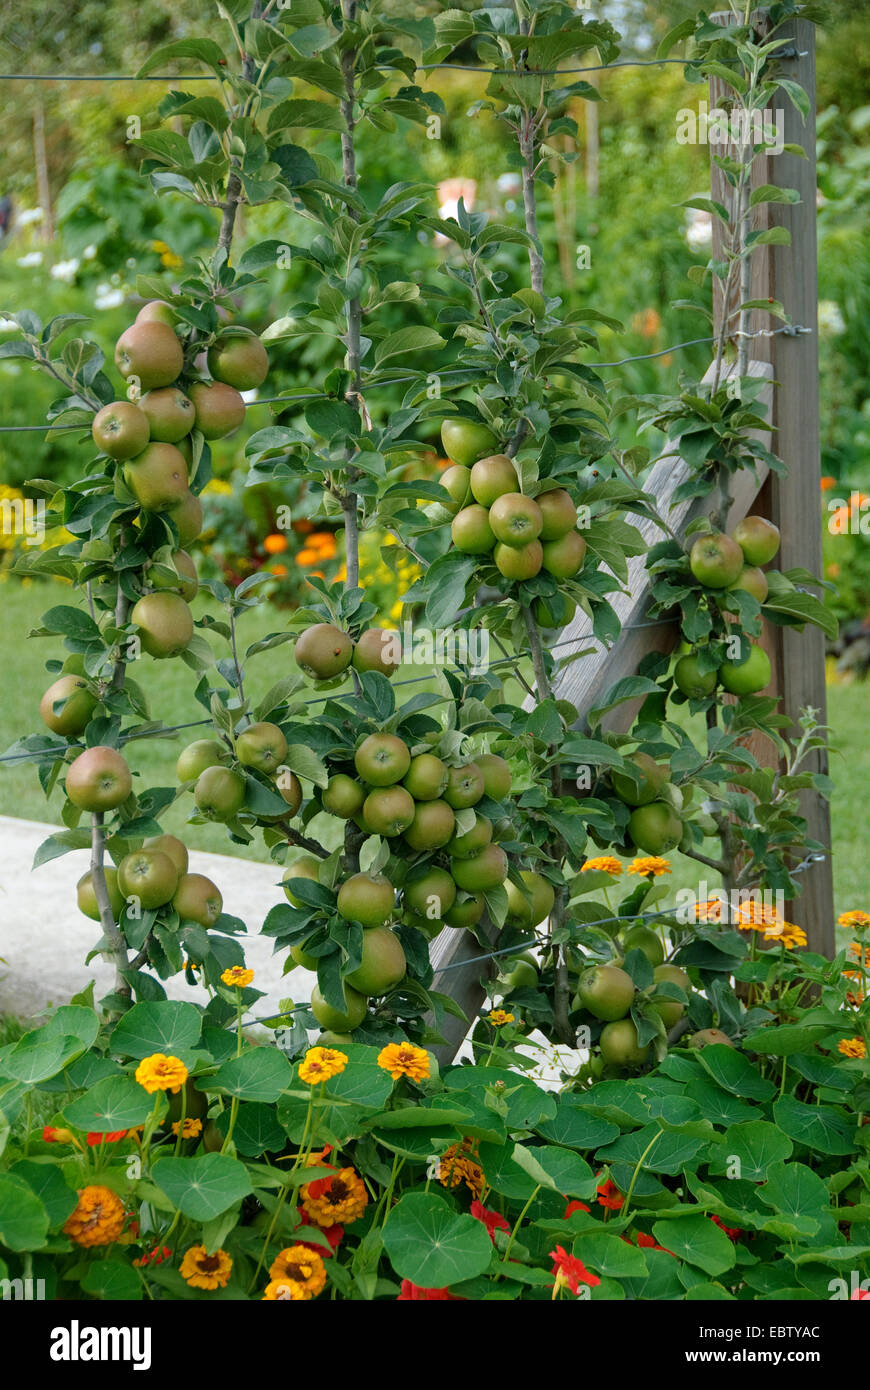 Apfelbaum (Malus Domestica 'Kanadarenette', Malus Domestica Kanadarenette), Sorte Kanadarenette, Äpfel auf dem Baum Stockfoto